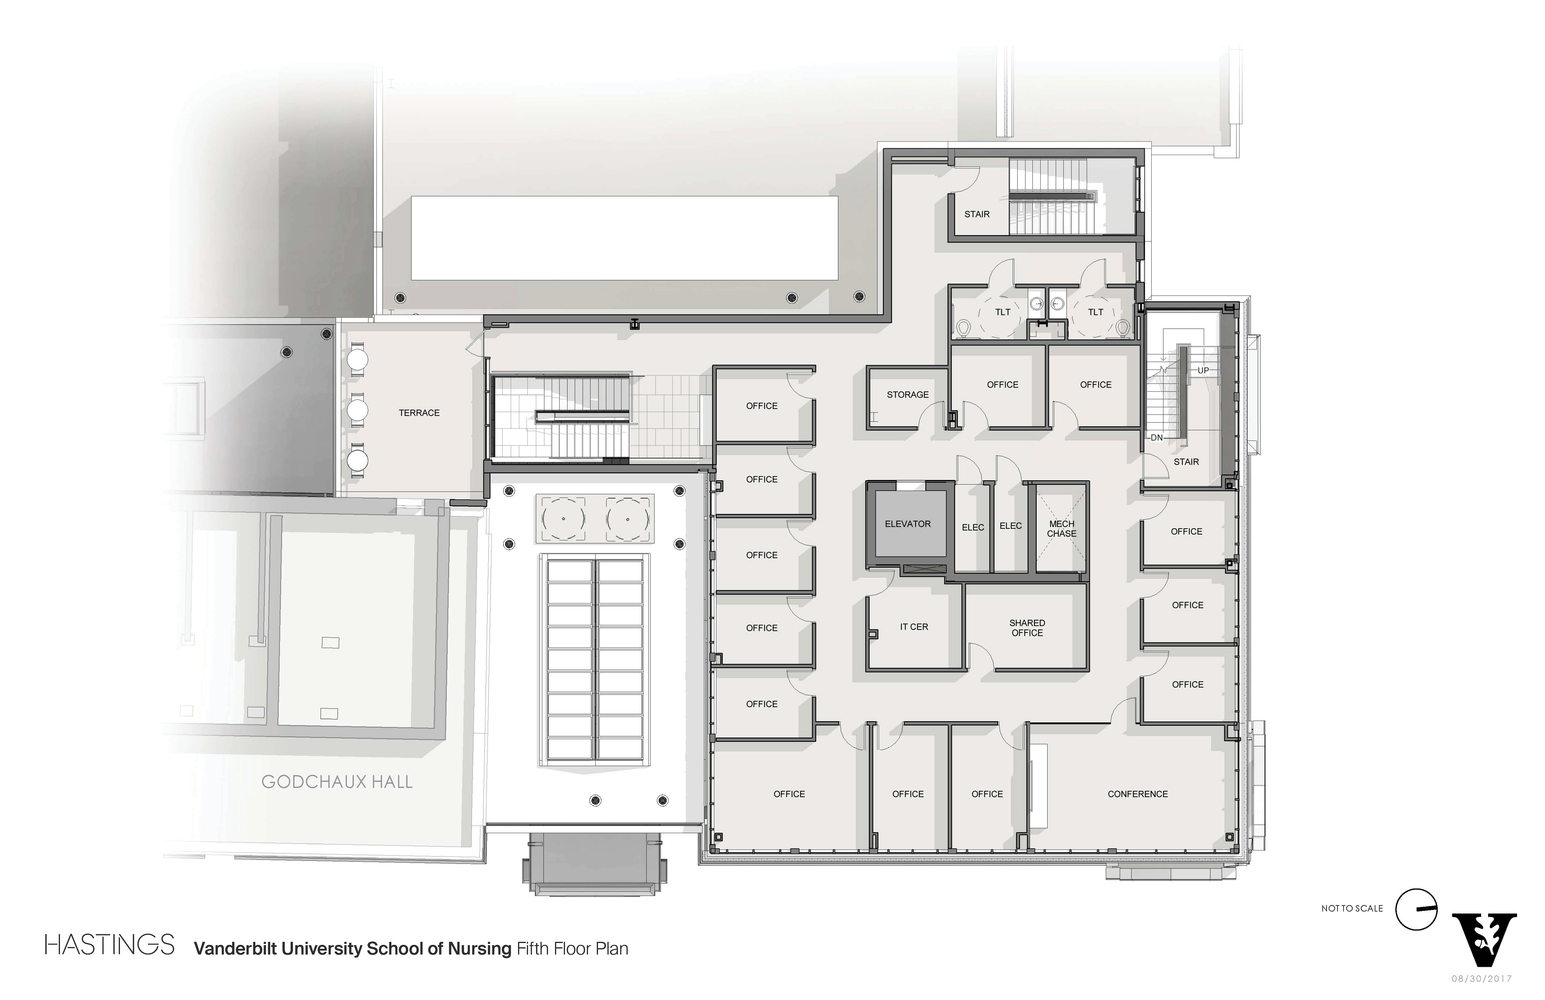 05_Vanderbilt_University_School_of_Nursing_Fifth_Floor_Plan.jpg